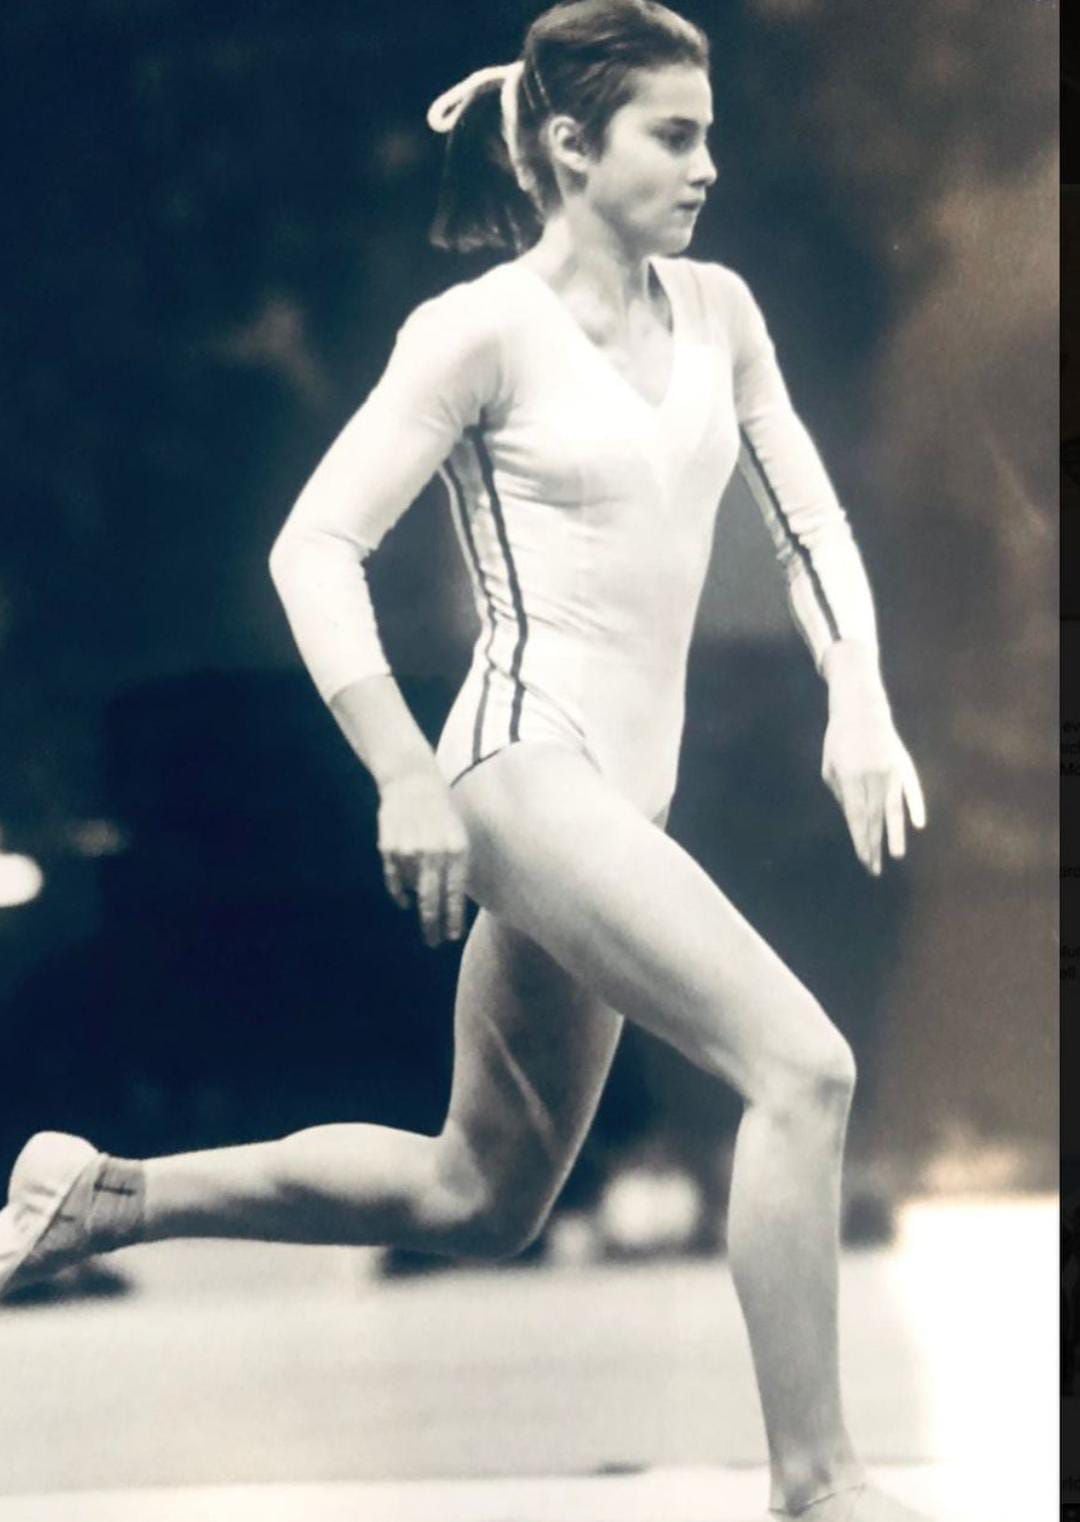 Nadia Comaneci consiguió 9 medallas olímpicas en toda su carrera. (Foto: Instagram (Comaneci10)